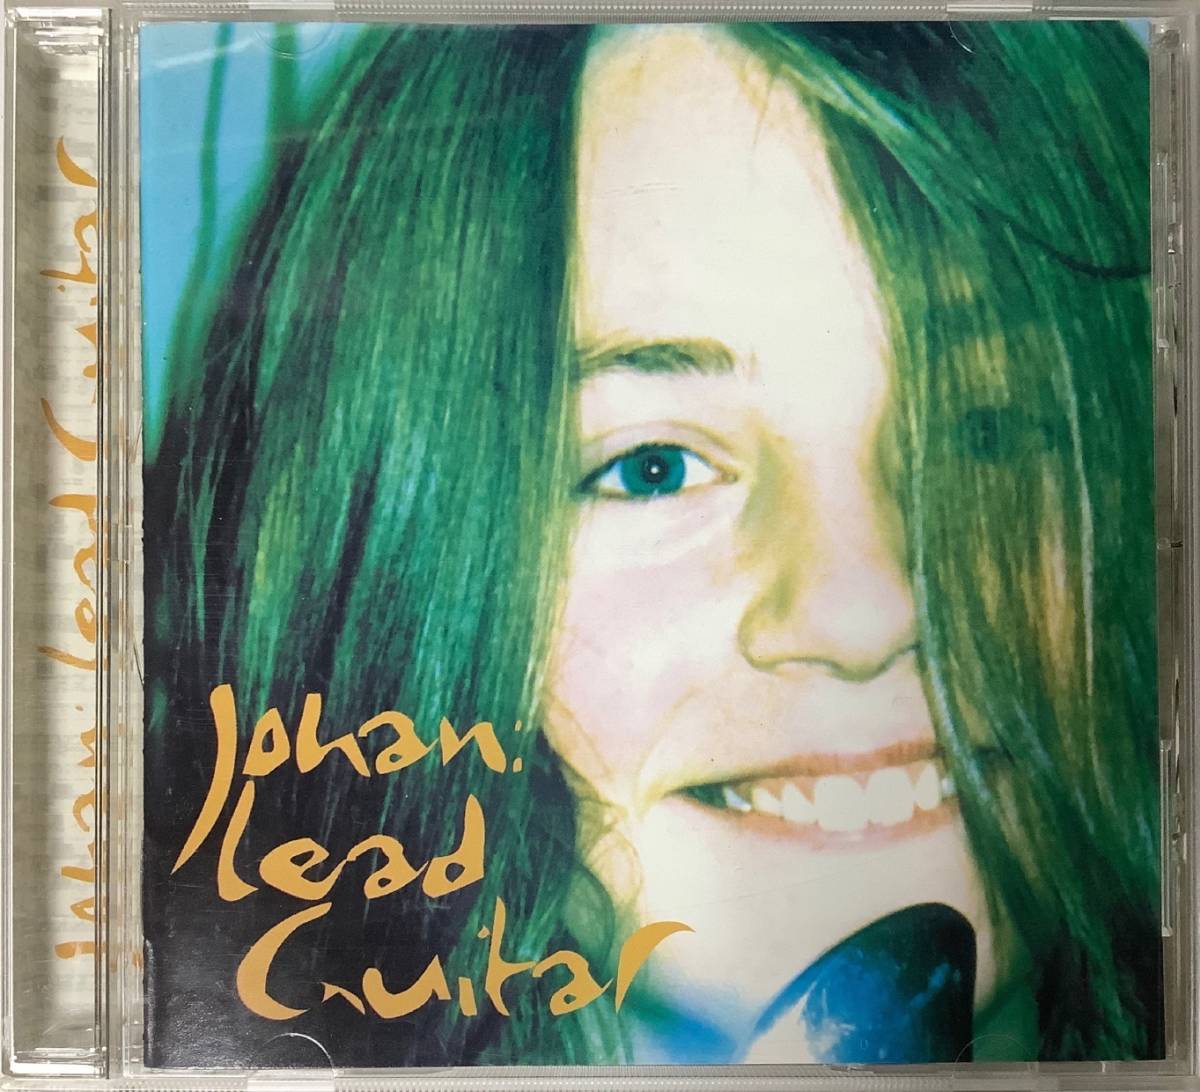 【洋楽CD】 Johan(ヨハン) 『Lead Guitar』VICP-61914/NG-157_画像1